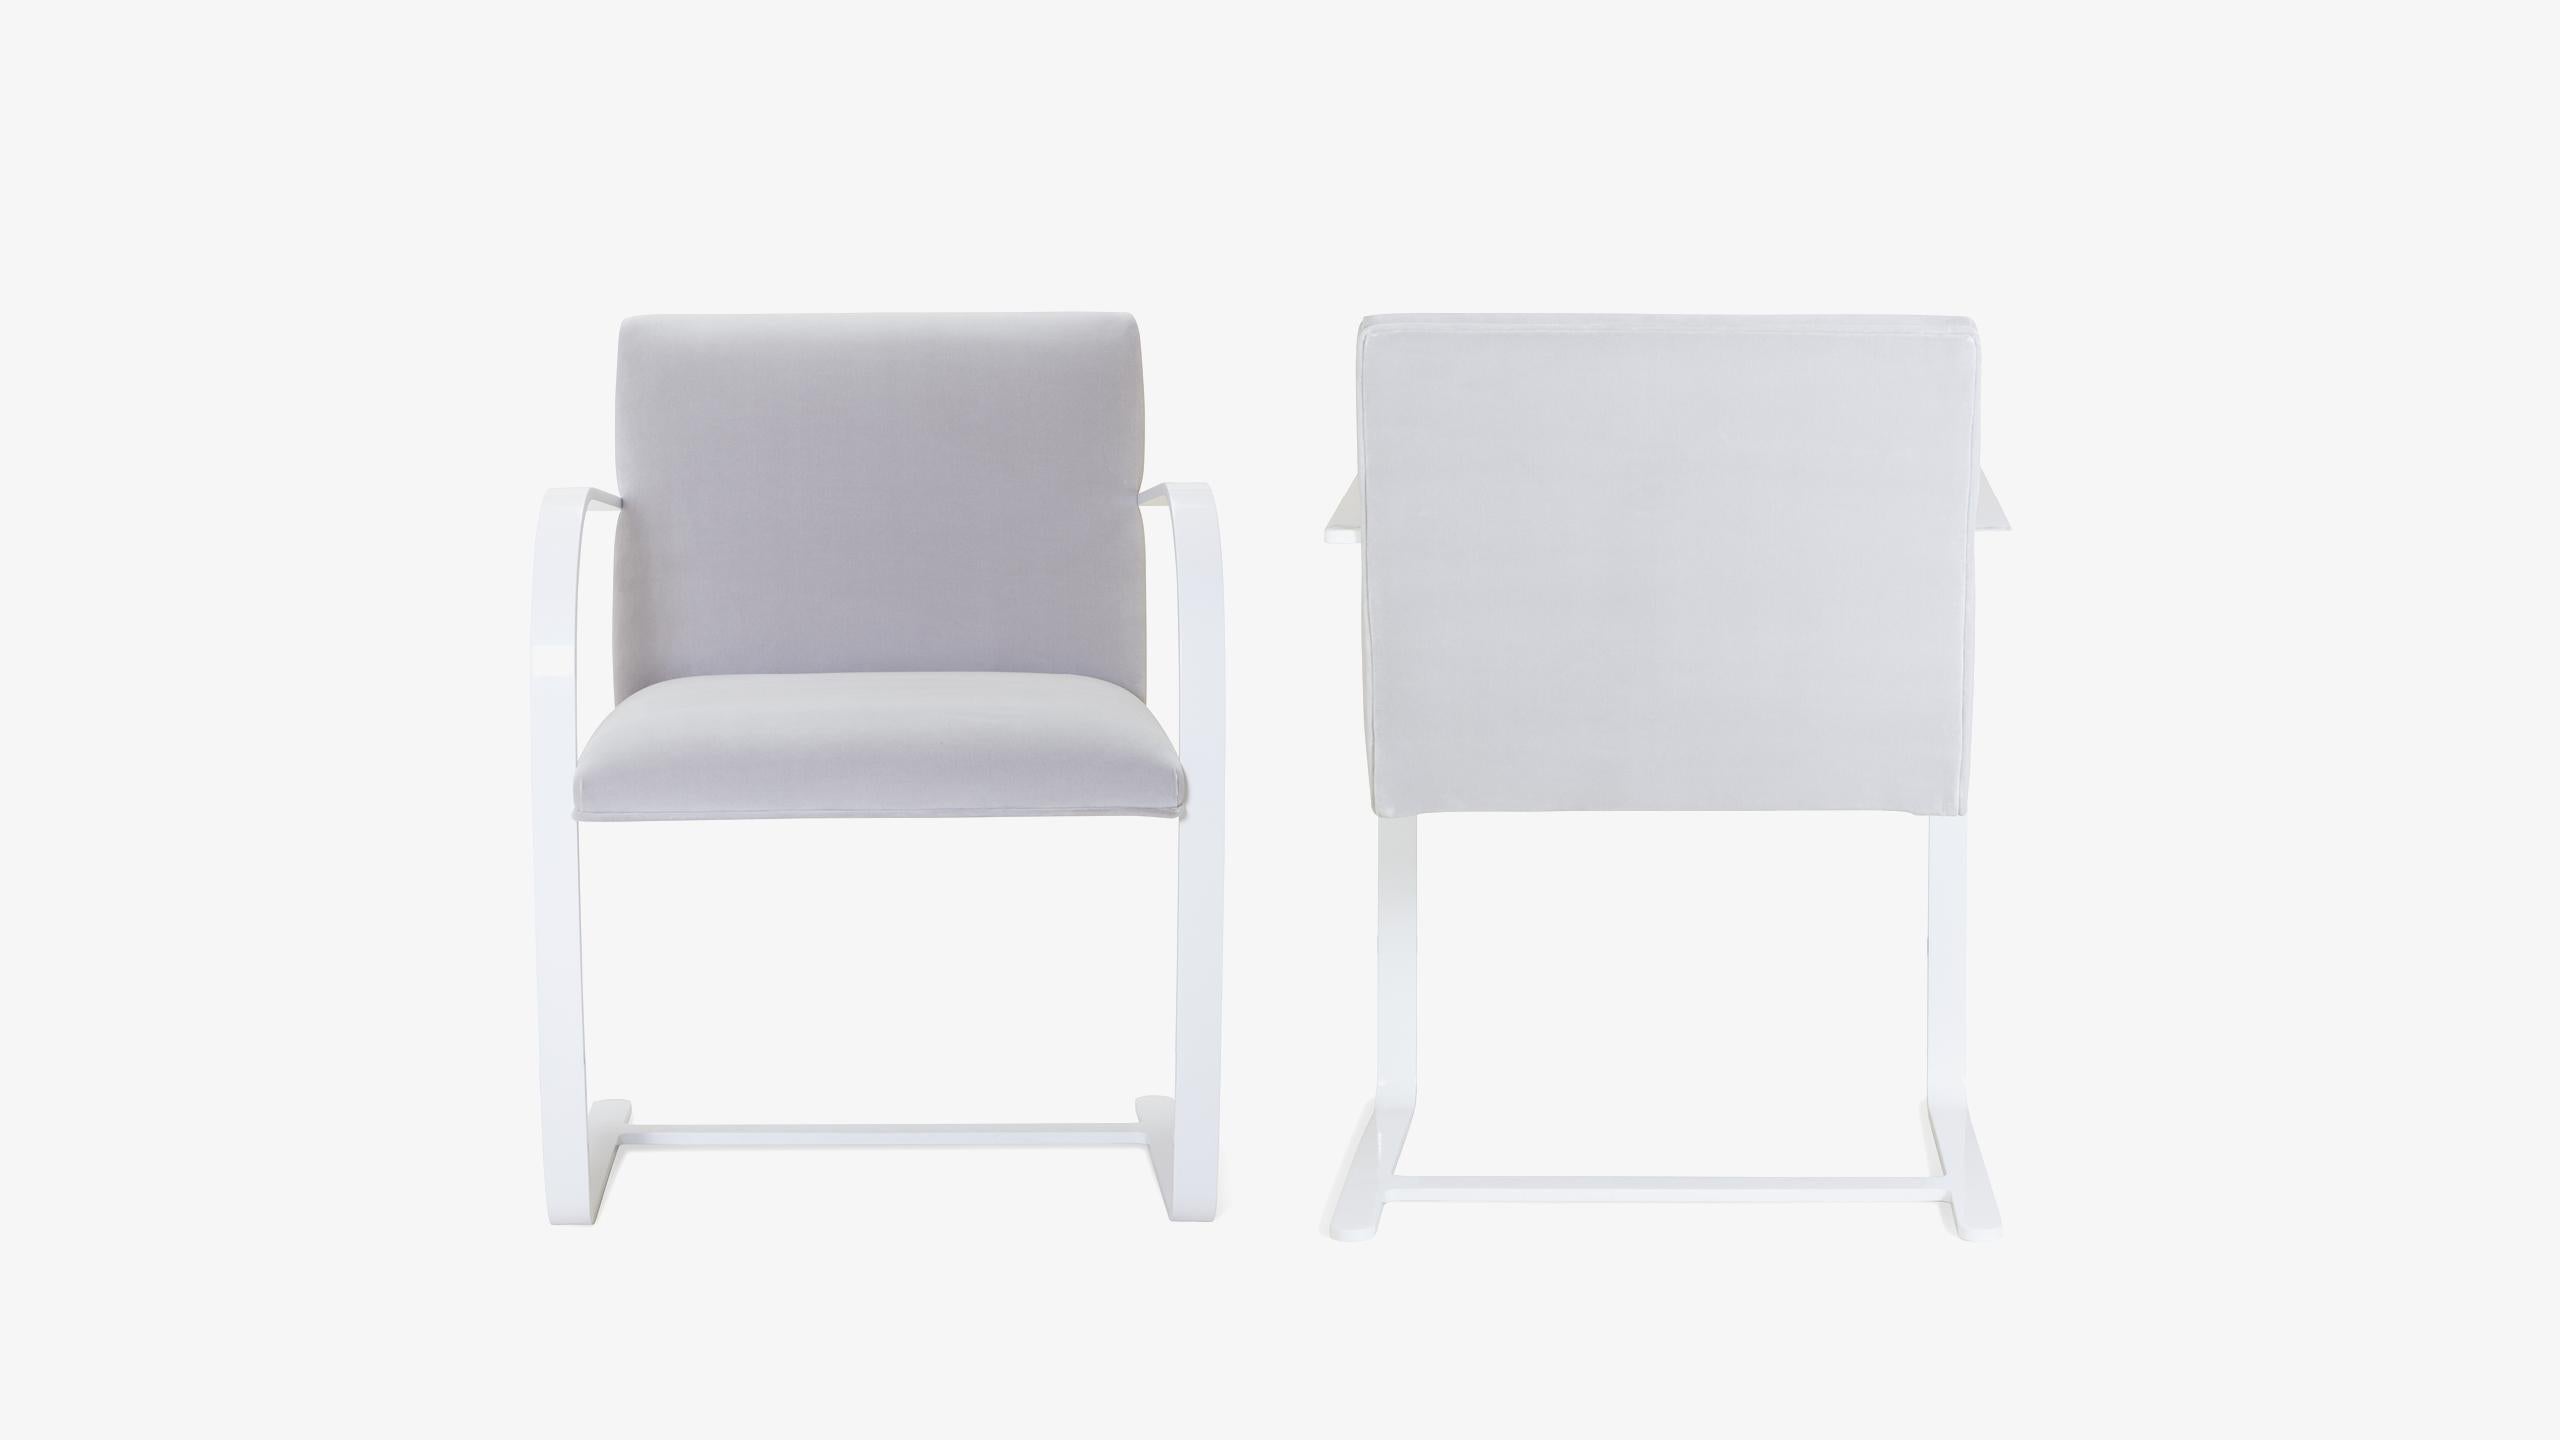 La définition du minimalisme dans un design singulier, réalisé par le grand Ludwig Mies van der Rohe en 1929 ; la chaise Brno Flat-Bar est exactement cela. Nous avons édité ces itérations contemporaines d'authentiques originaux d'une manière qui n'a